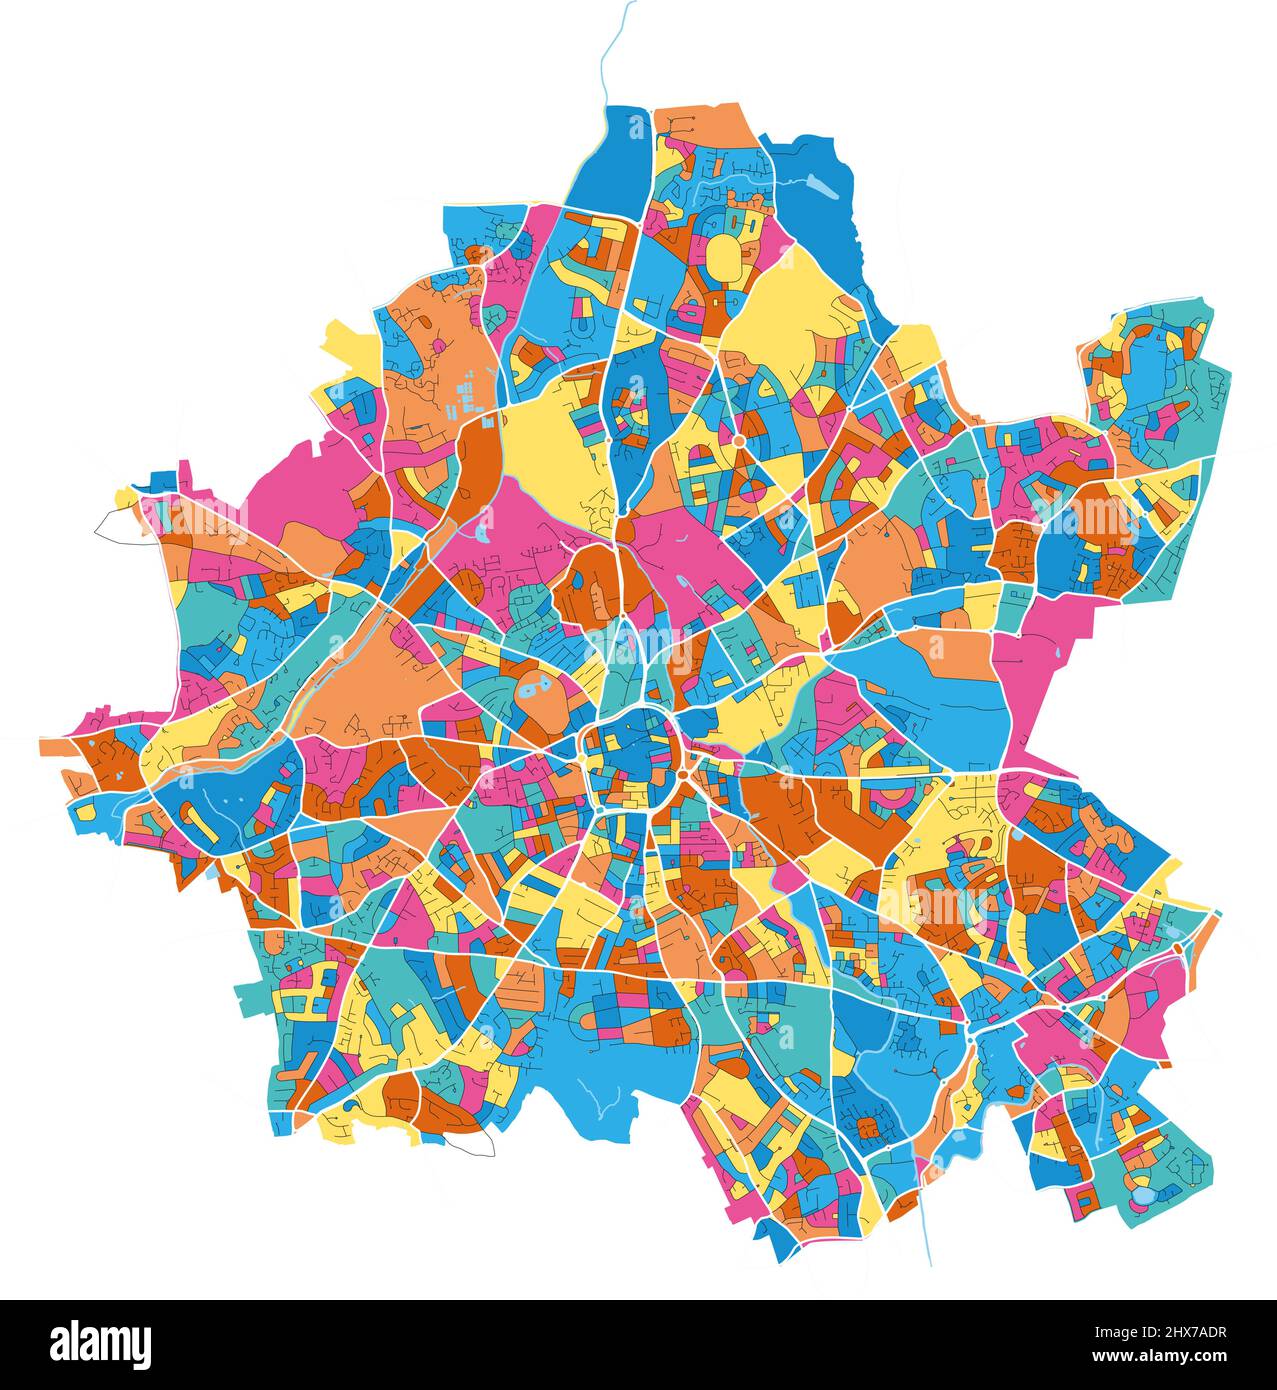 Wolverhampton, West Midlands, England Bunte, hochauflösende Vektorgrafik-Karte mit Stadtgrenzen. Weiße Umrisse für Hauptstraßen. Viele Details. Blau Stock Vektor